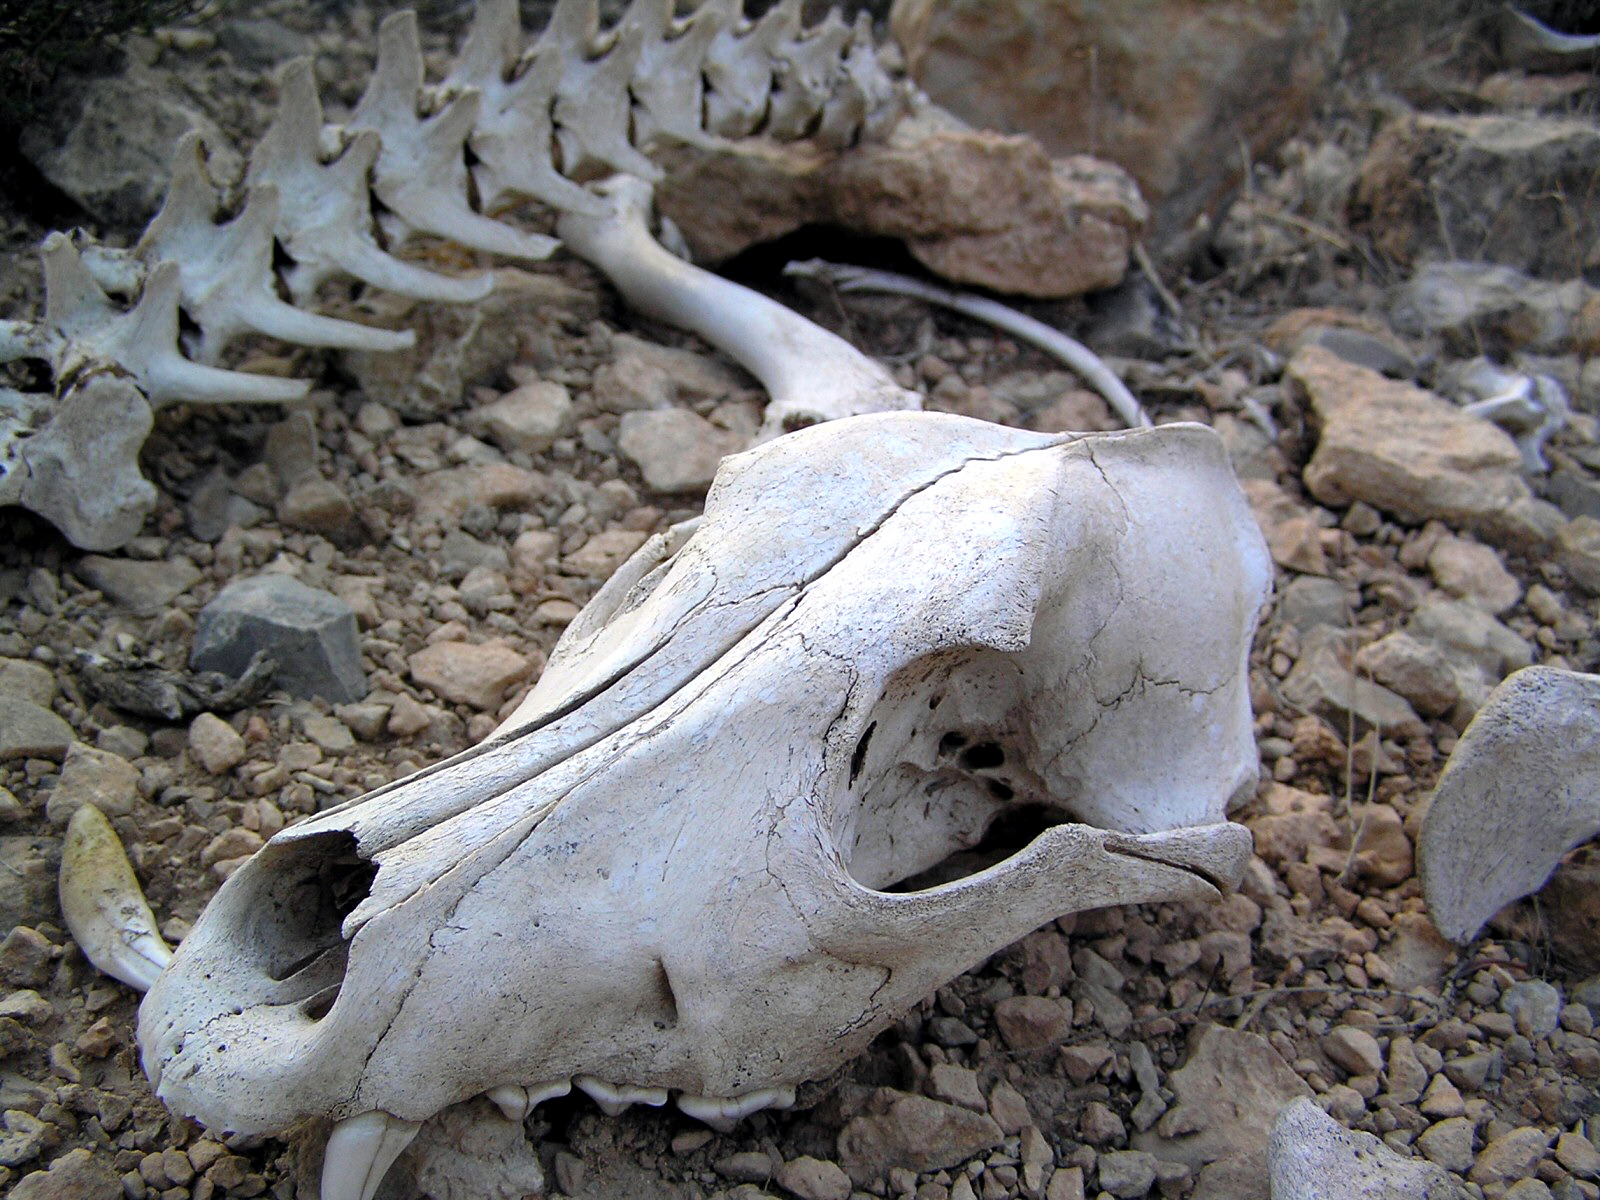 Old animal skull in the Sahara Desert, Africa